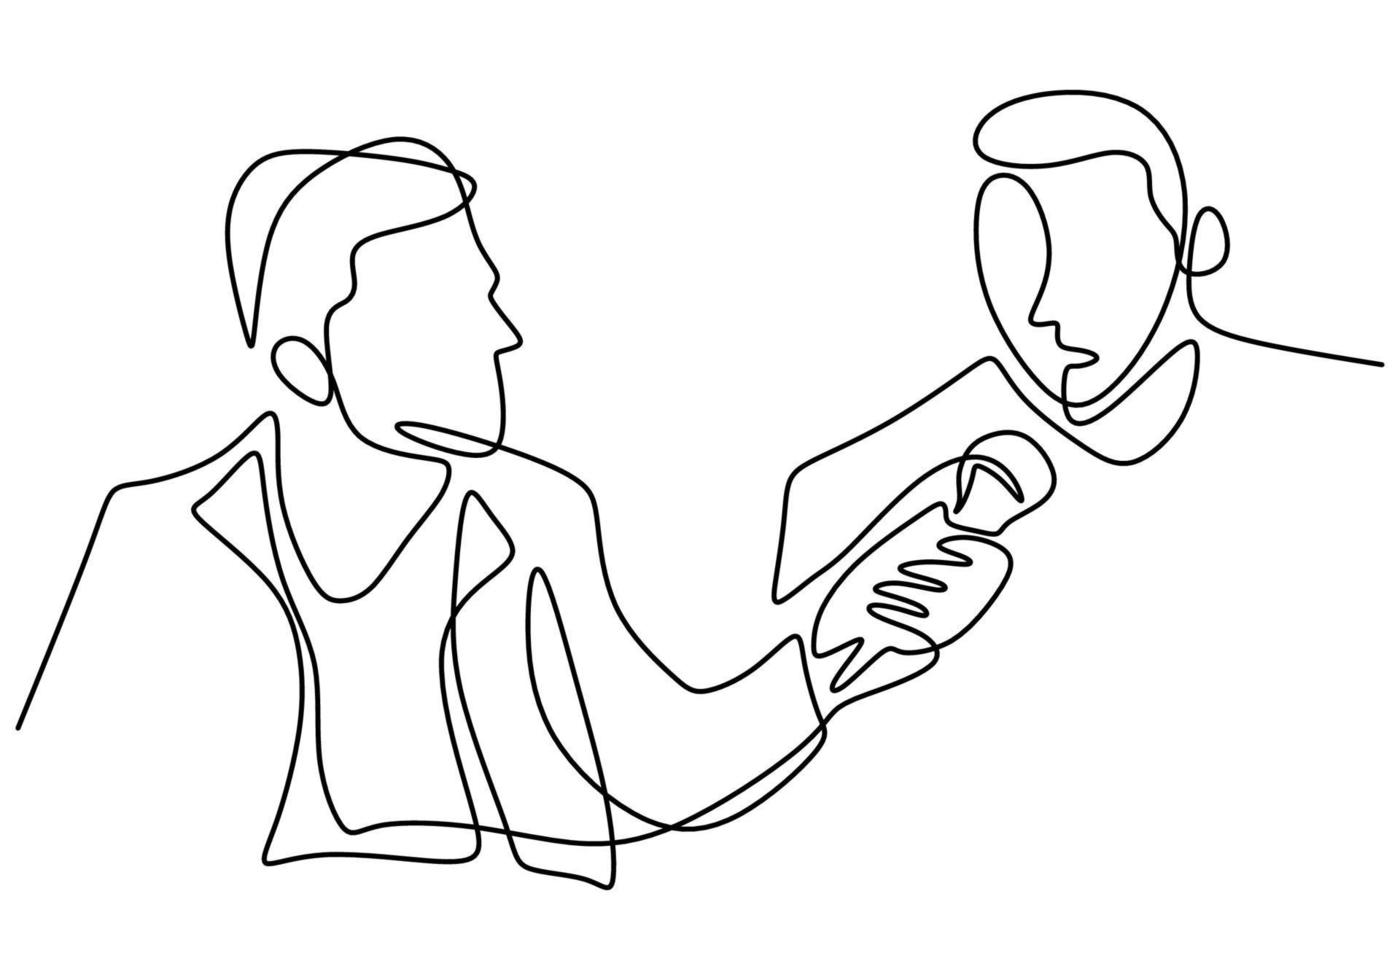 Un dessin au trait continu d'un homme tenant un microphone à la main et posant une question à un autre homme vecteur